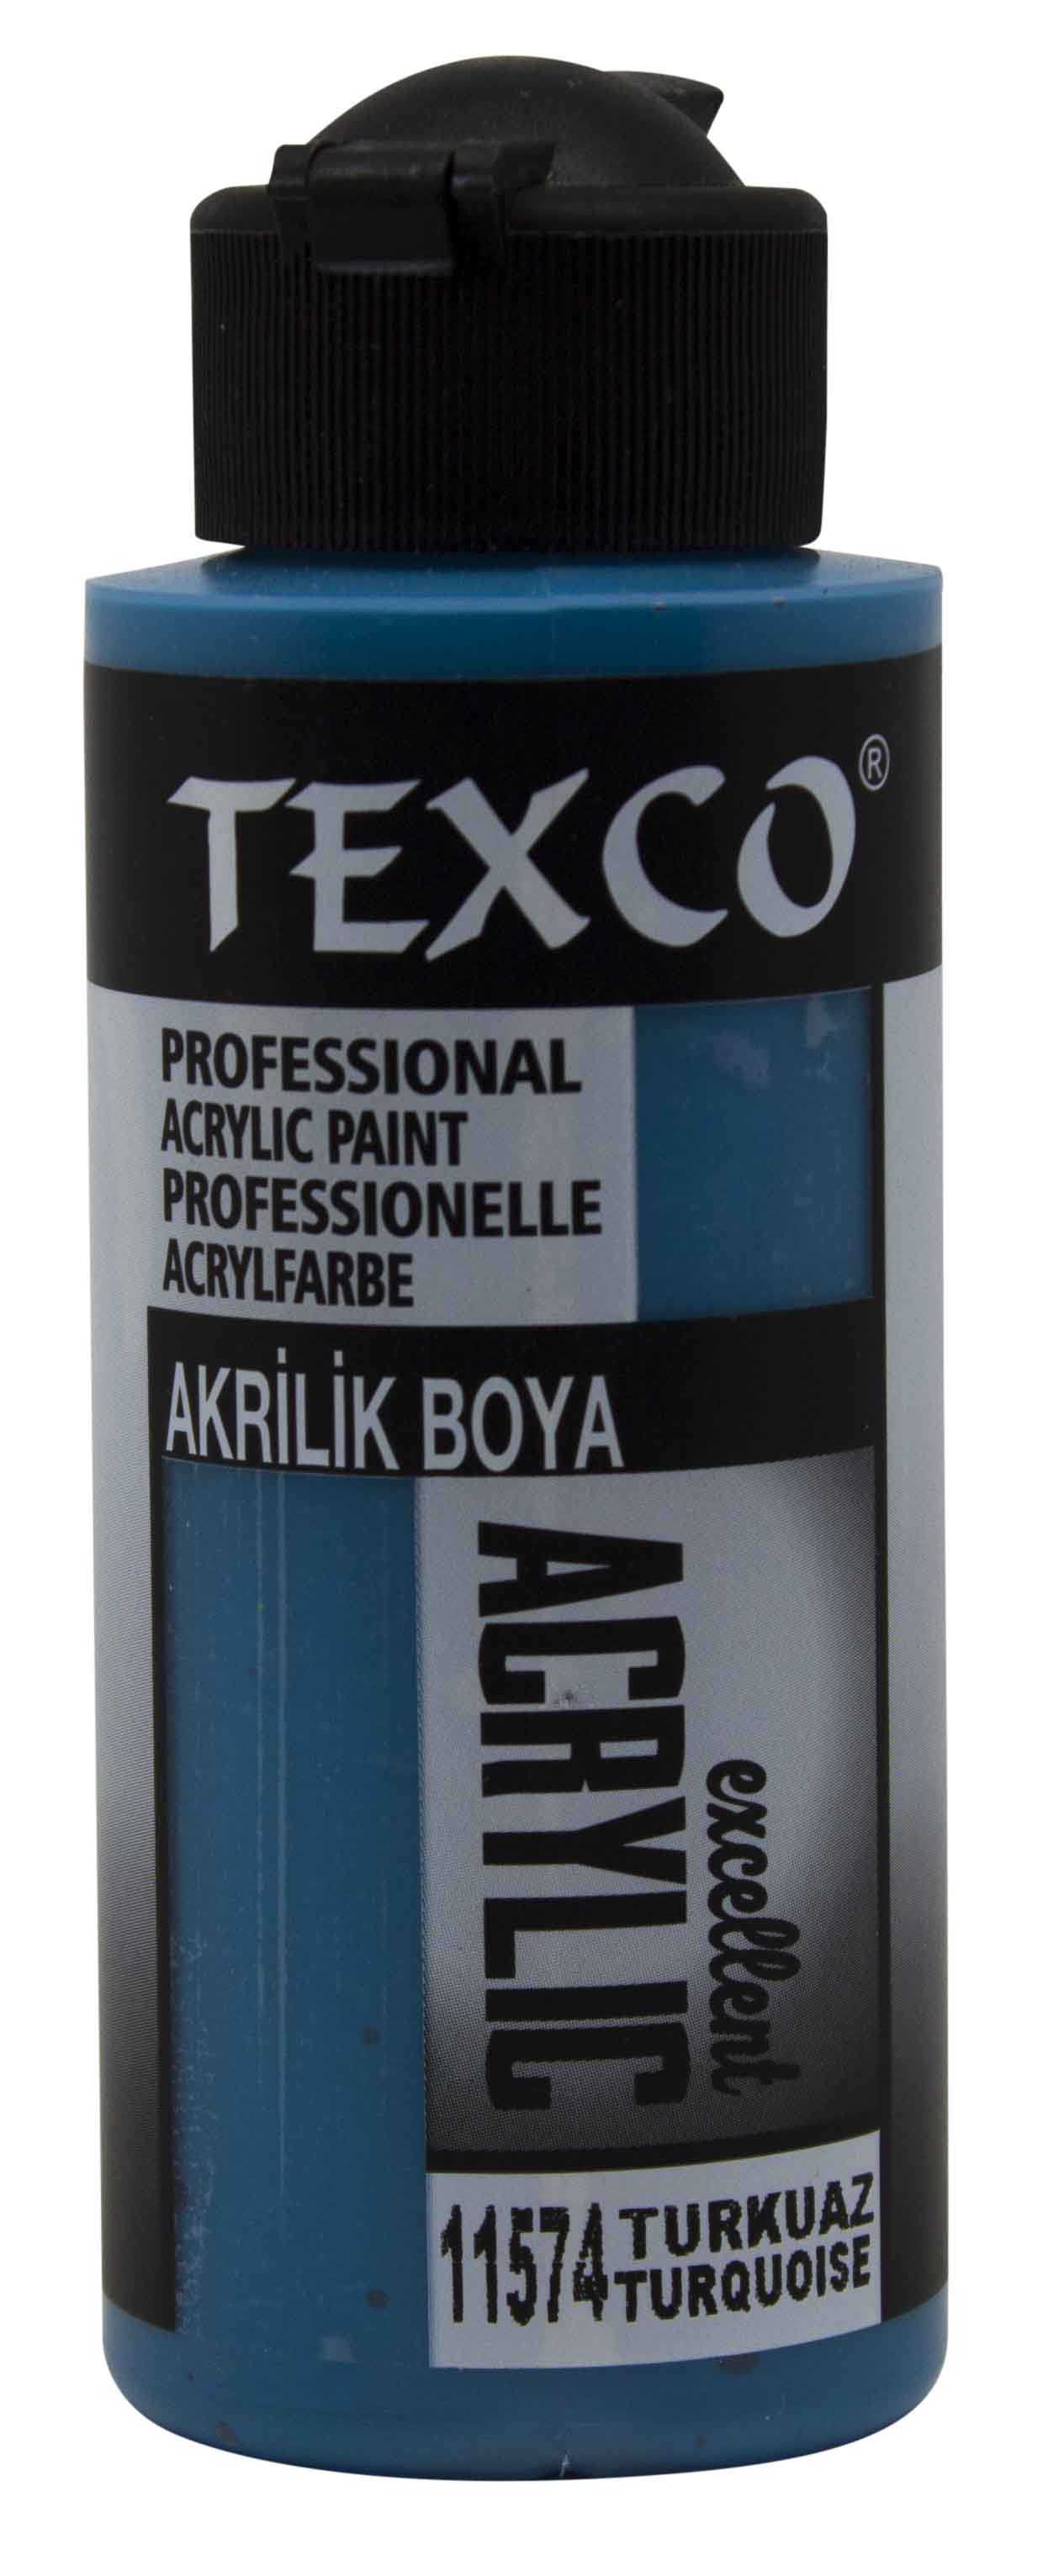 Texco Excellent Akrilik Boya 11574-Turkuaz 110 cc